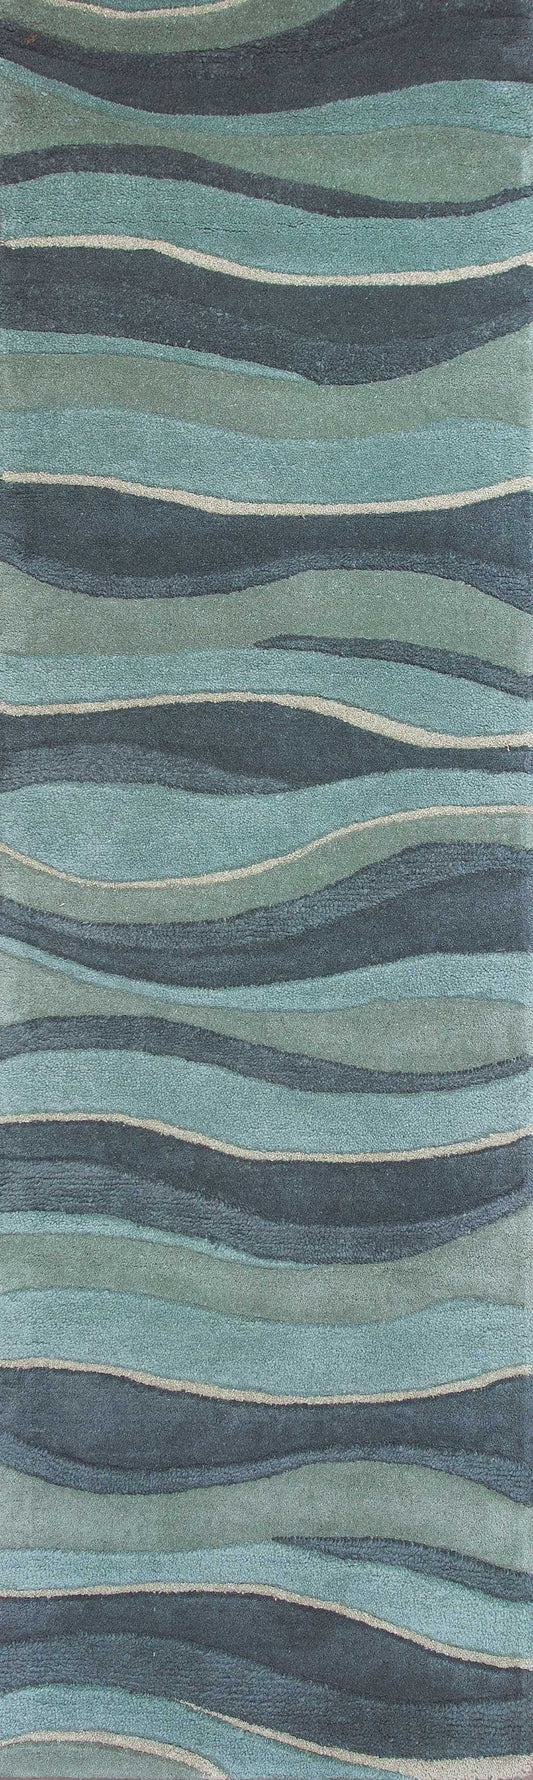 5' x 8' Aquamarine Abstract Waves Hand Tufted Wool Area Rug